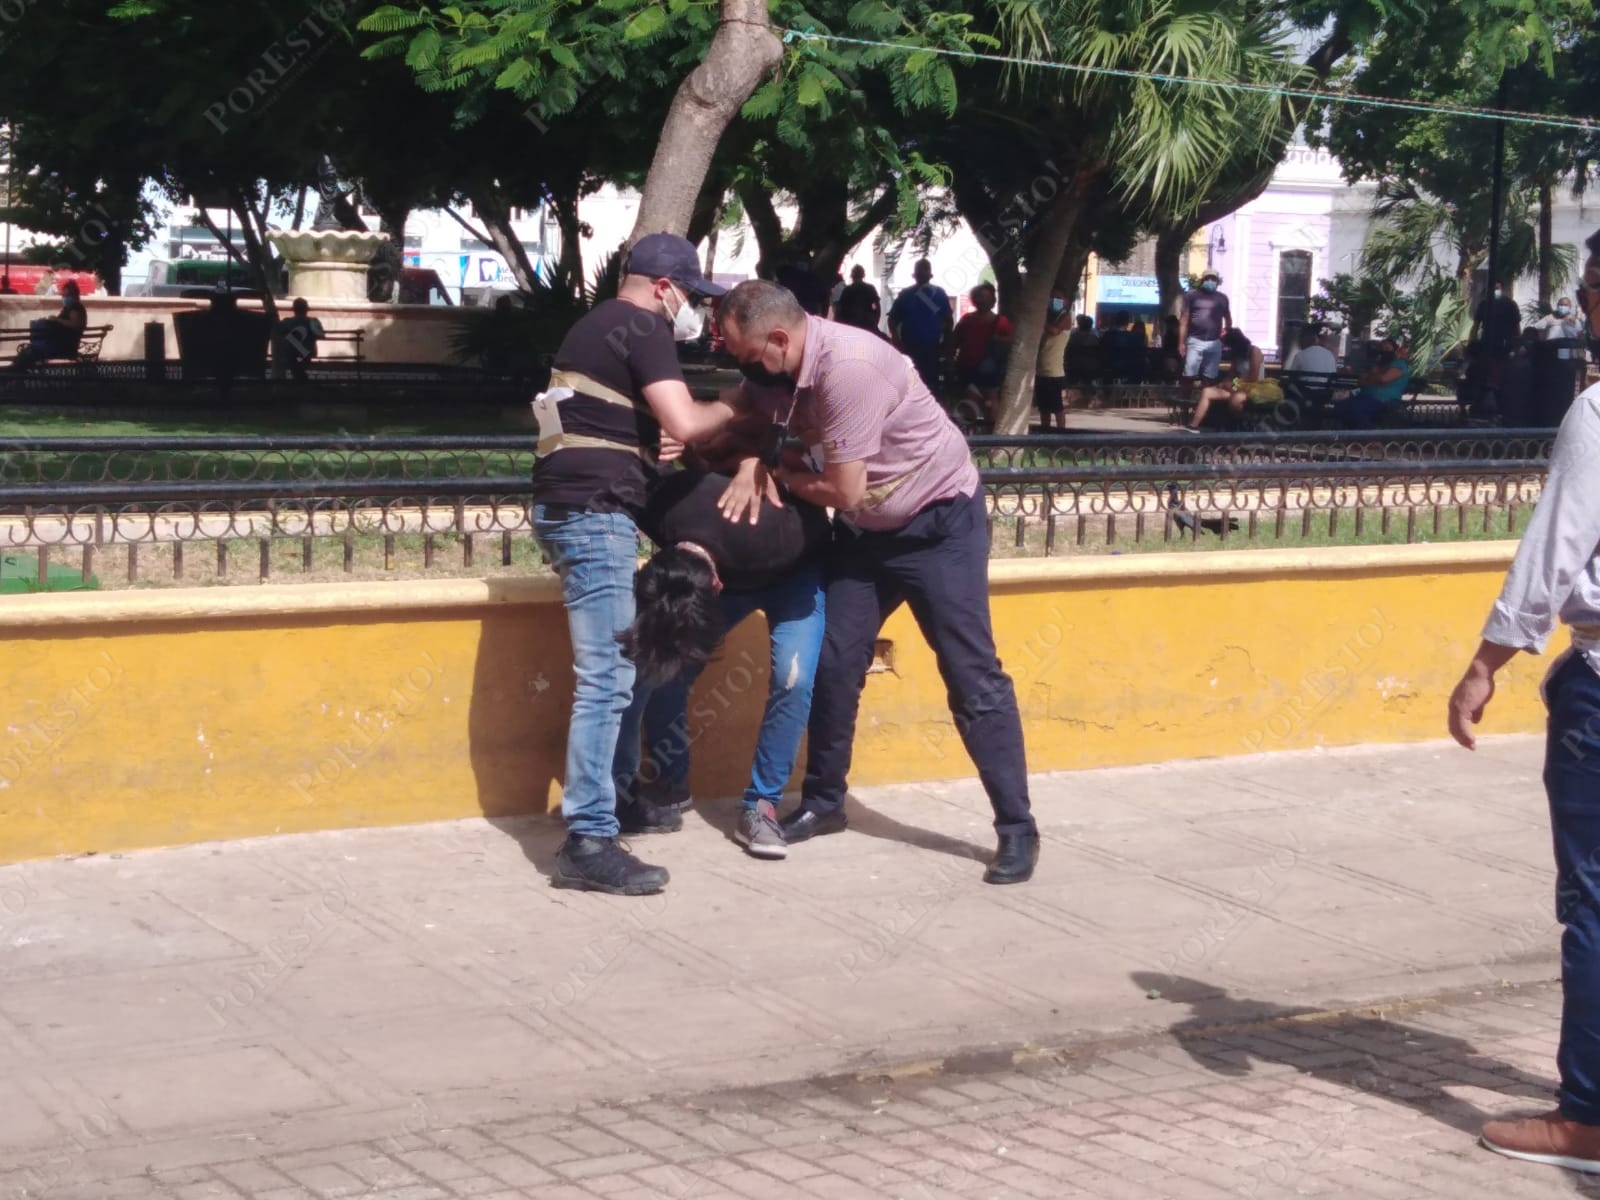 Reconstrucción de hechos sobre el caso José Eduardo: Así fue su detención en Mérida